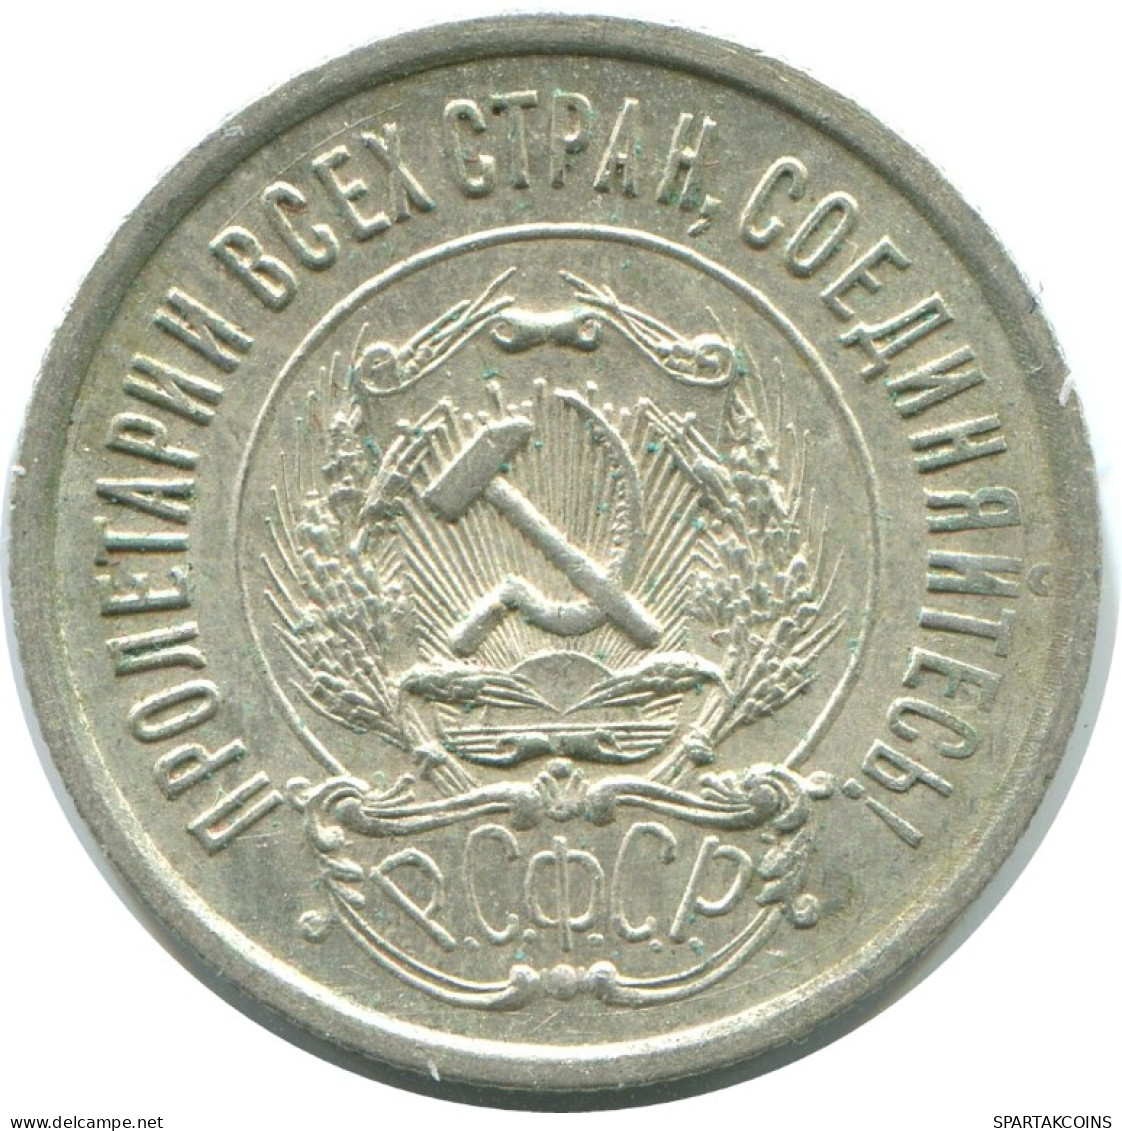 20 KOPEKS 1923 RUSSLAND RUSSIA RSFSR SILBER Münze HIGH GRADE #AF497.4.D.A - Russia